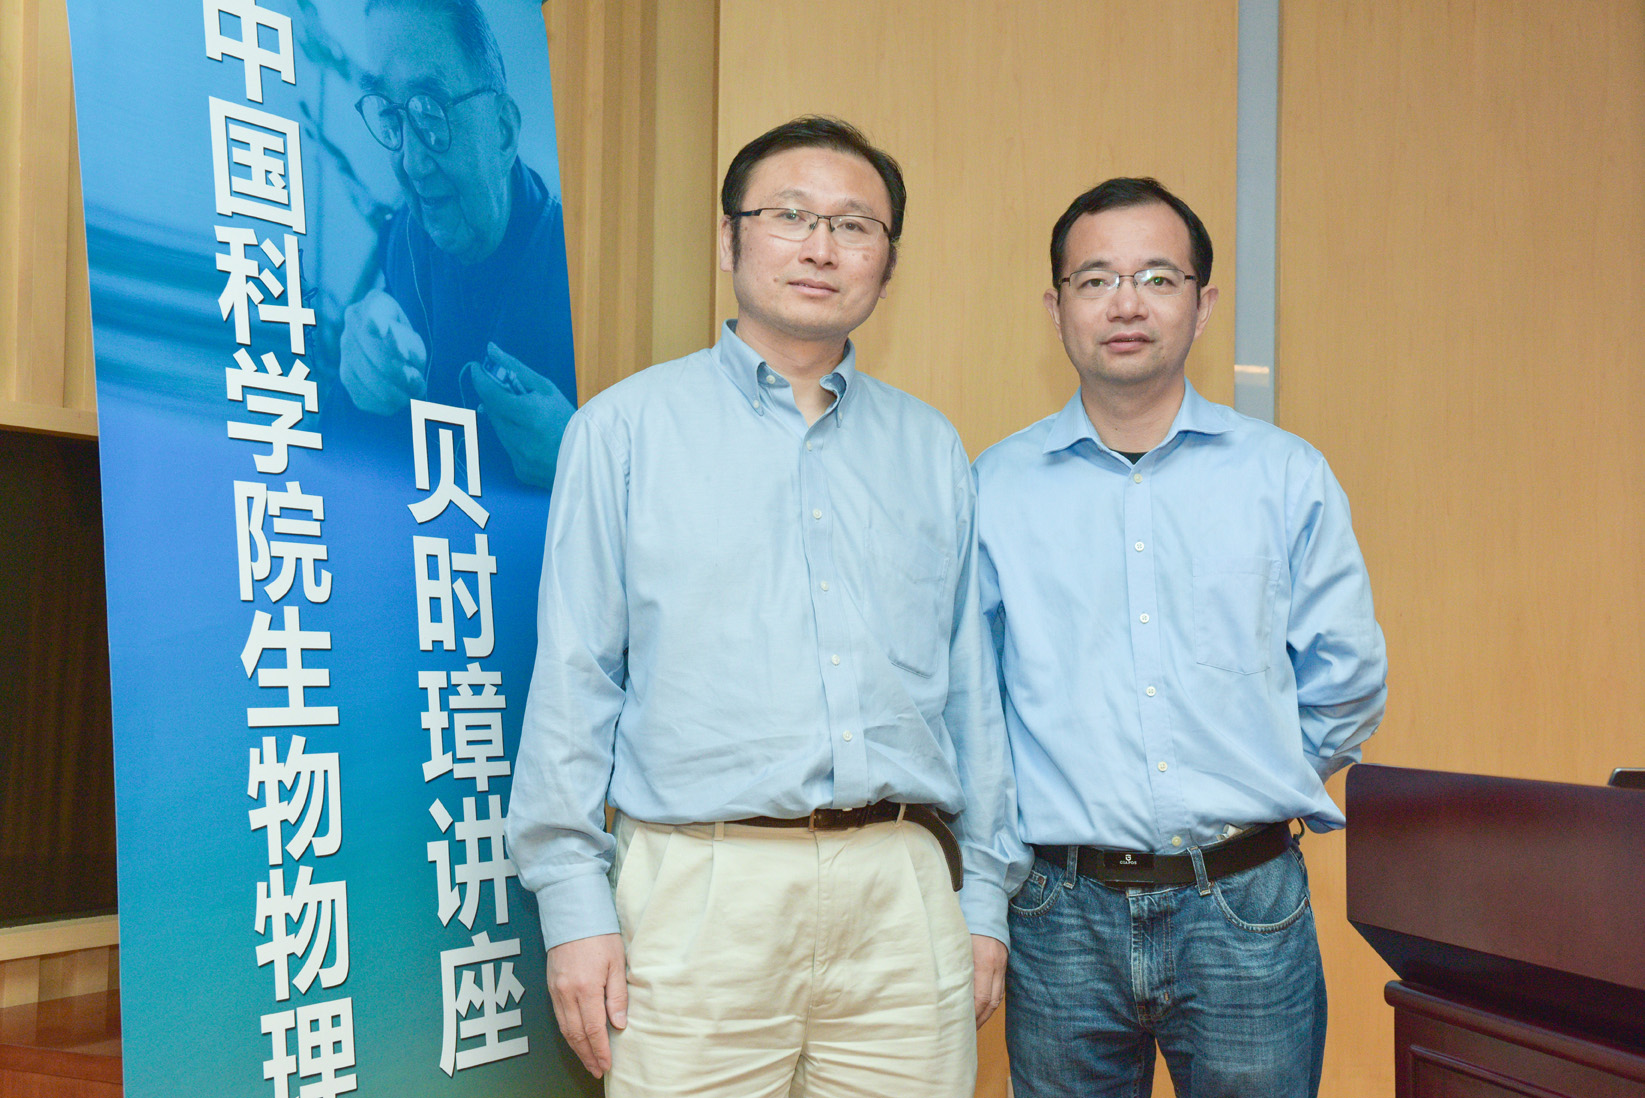 赵英明教授和朱冰研究员(从左至右)